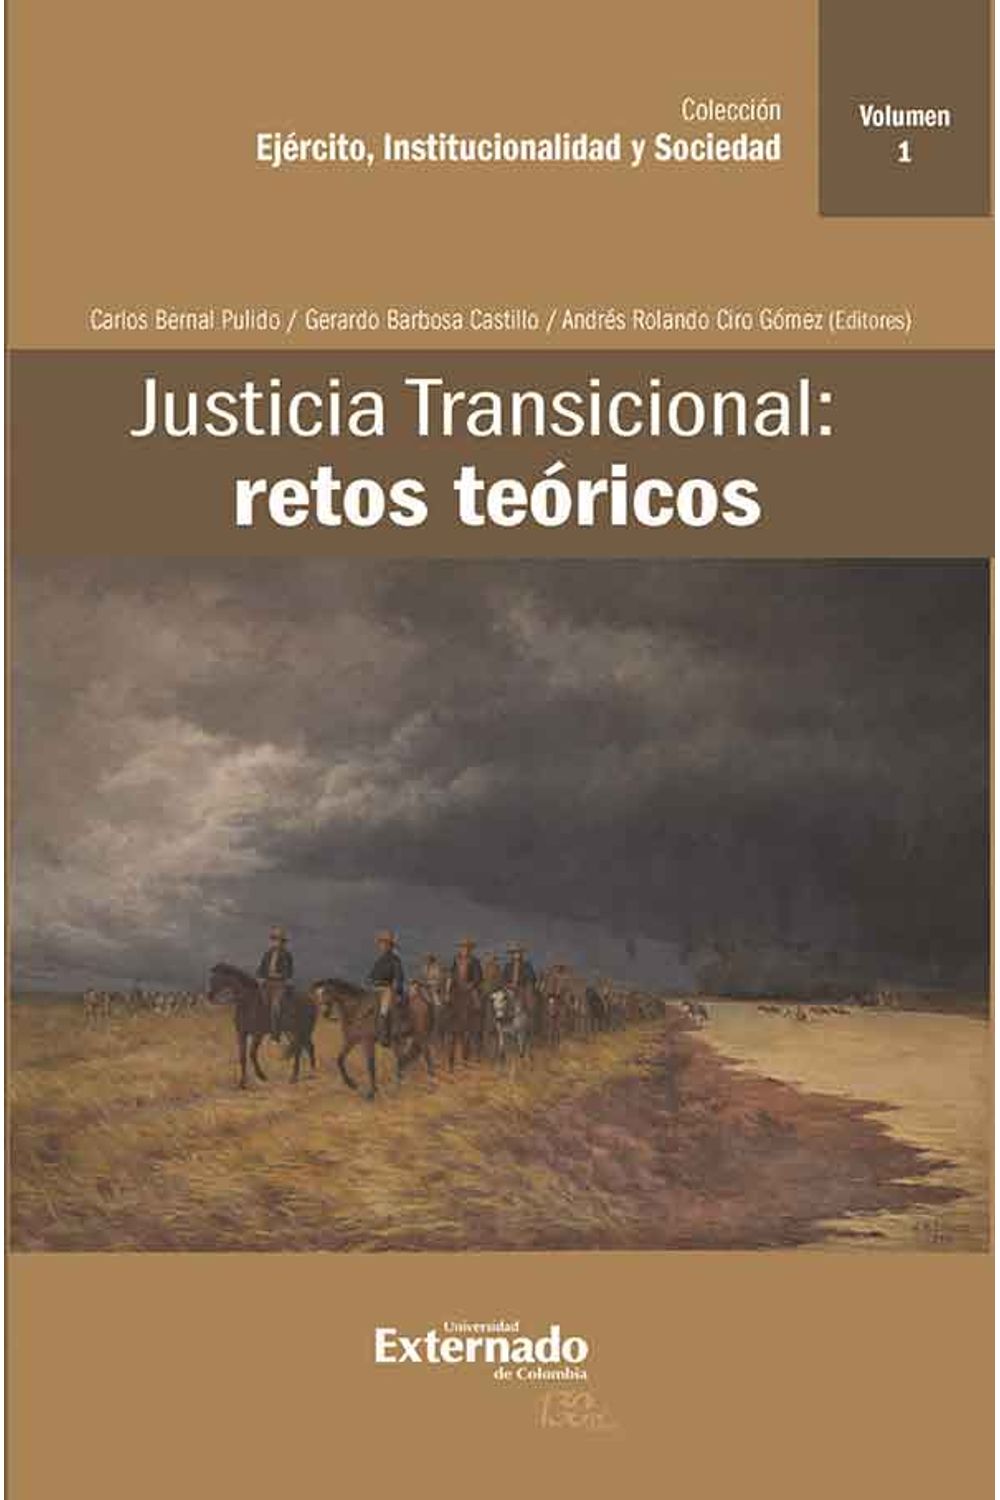 bw-justicia-transicional-retos-teoacutericos-u-externado-de-colombia-9789587726749